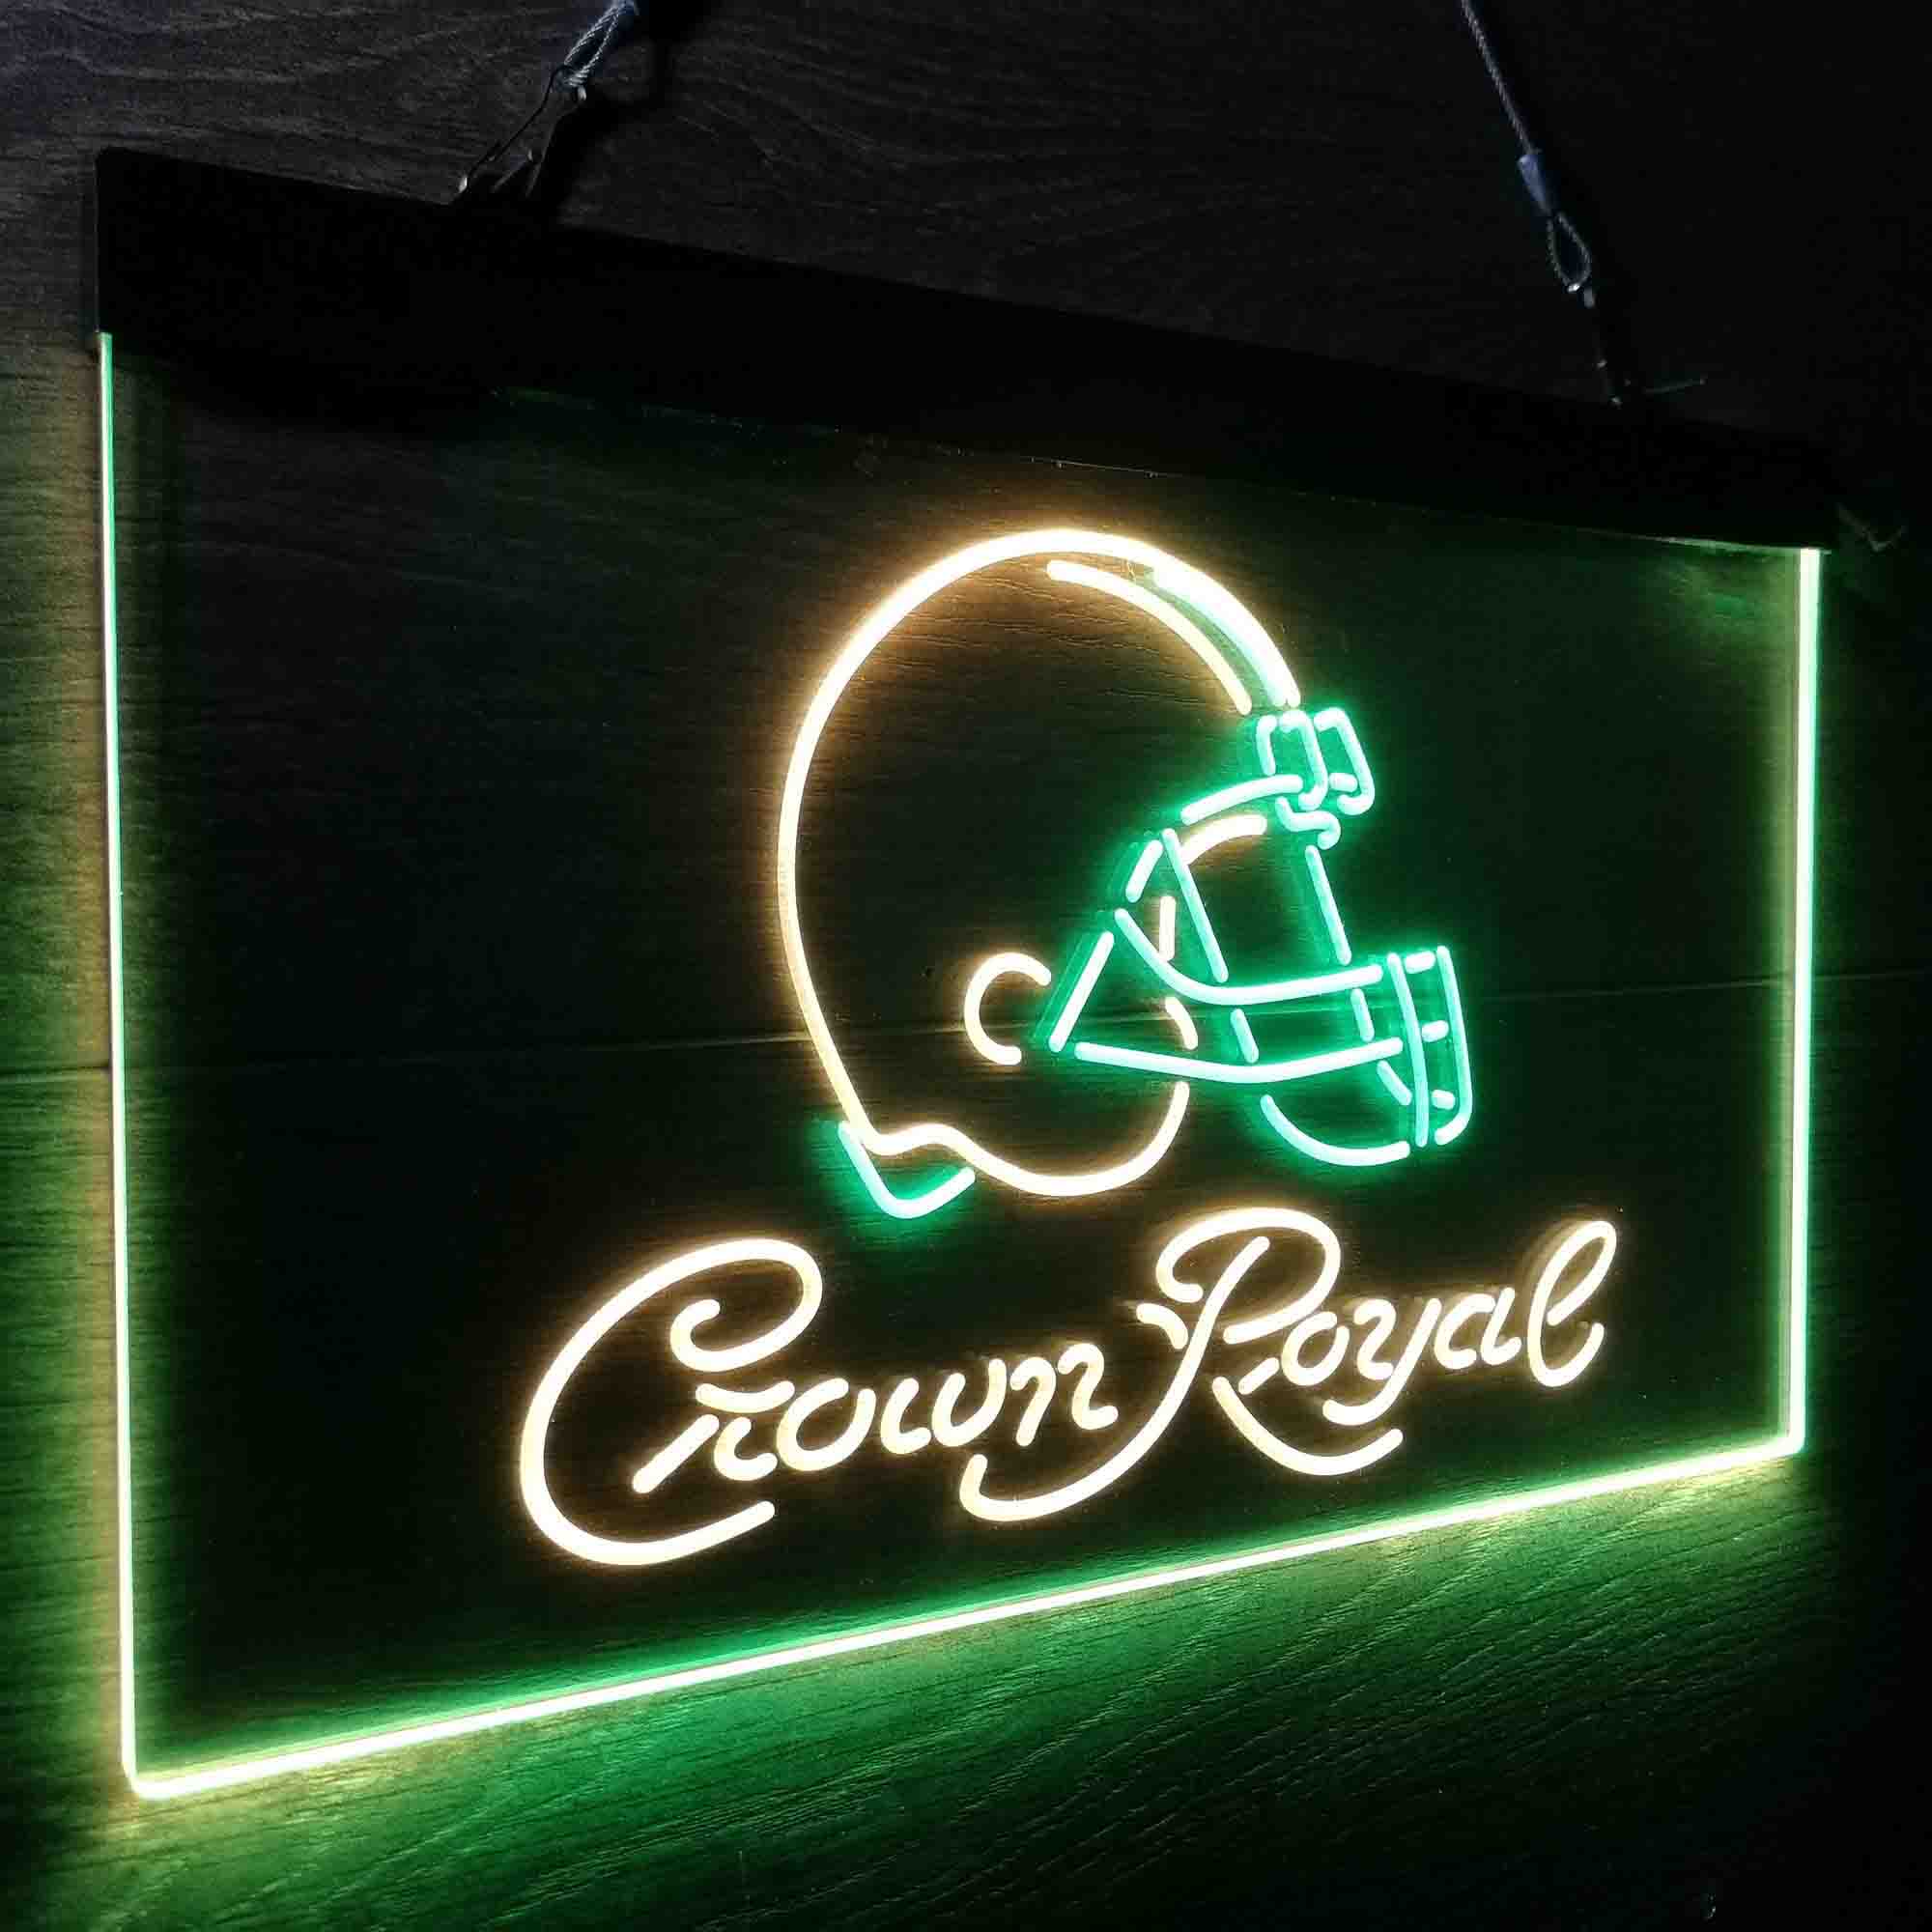 Crown Royal Bar Cleveland Browns Est. 1946 LED Neon Sign